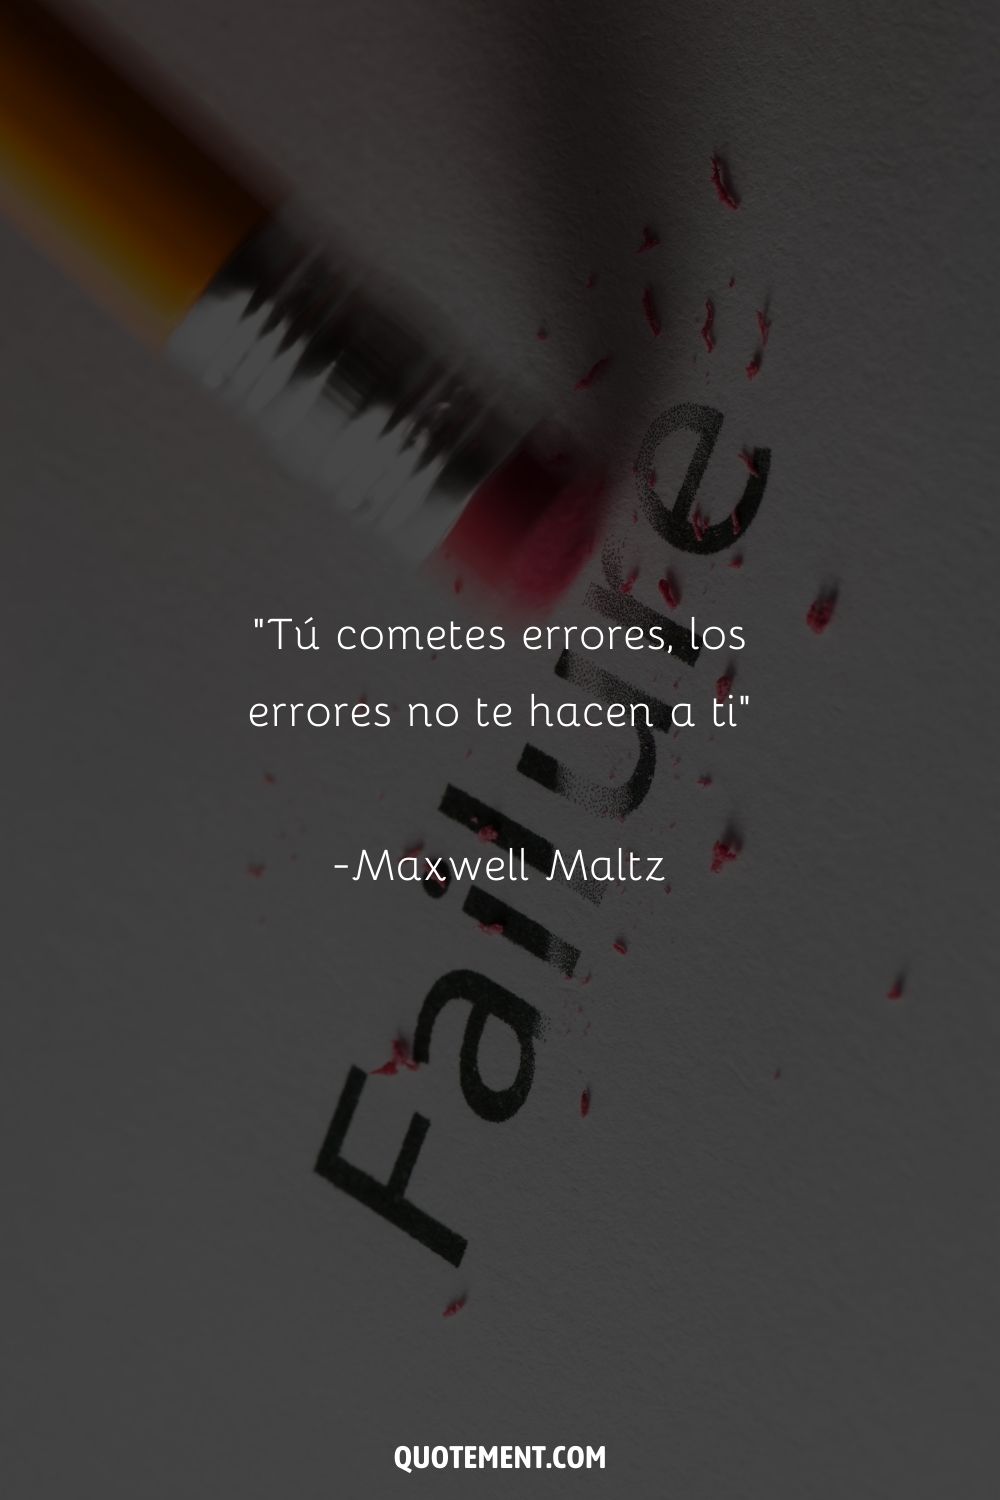 "Cometes errores, los errores no te hacen" - Maxwell Maltz